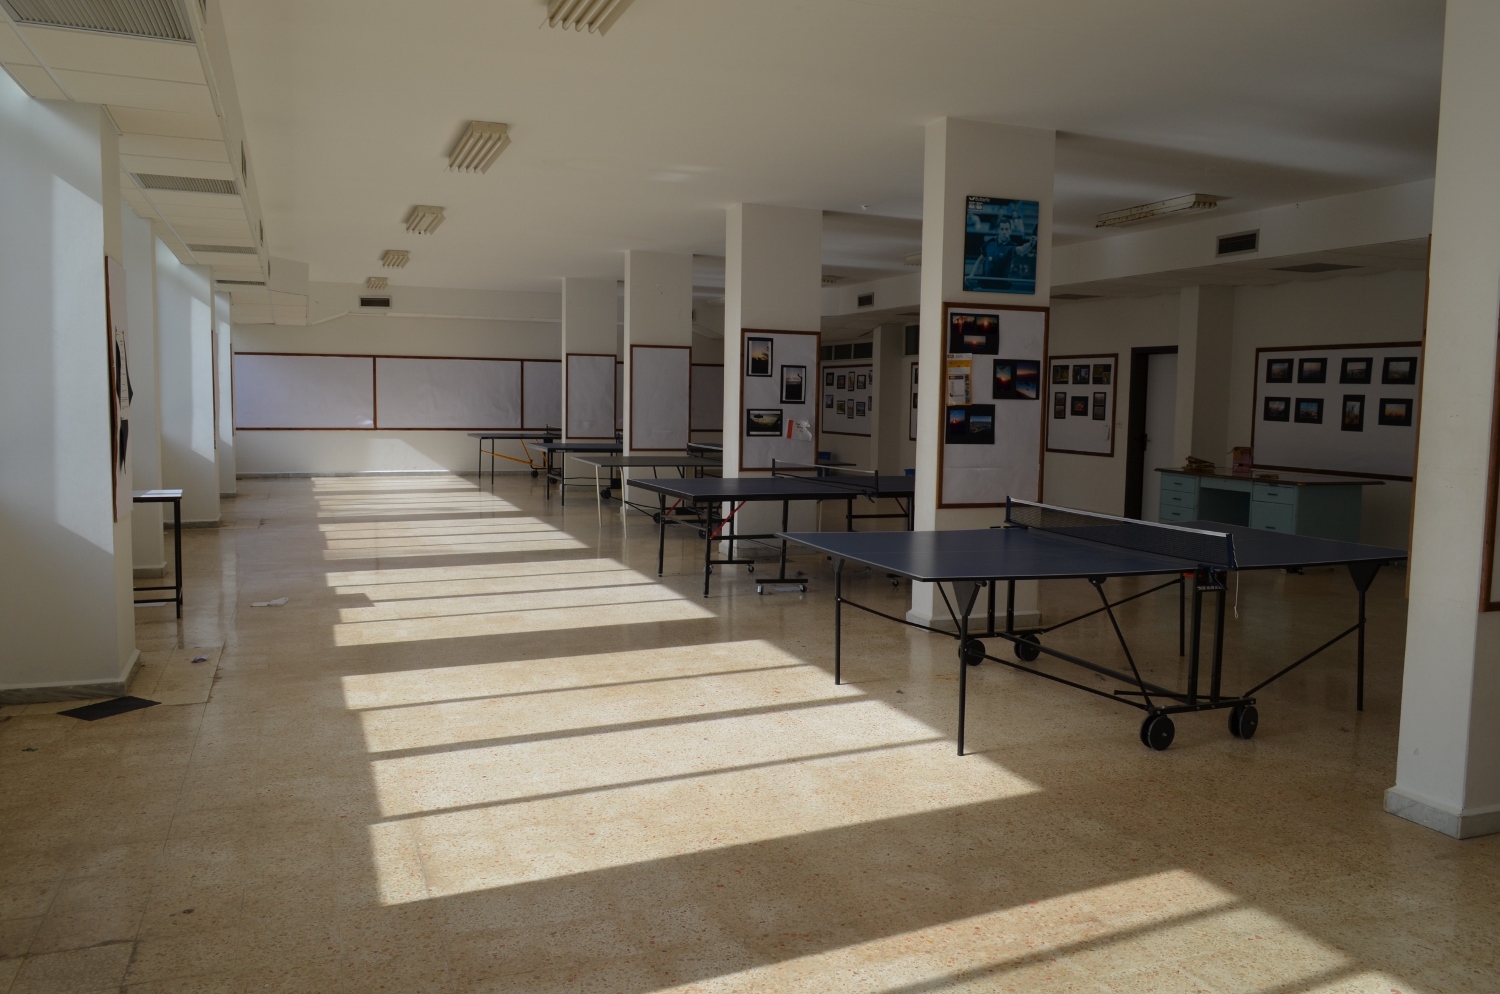 Salle polyvalente : ping-pong, salle d’exposition, forum des universités…